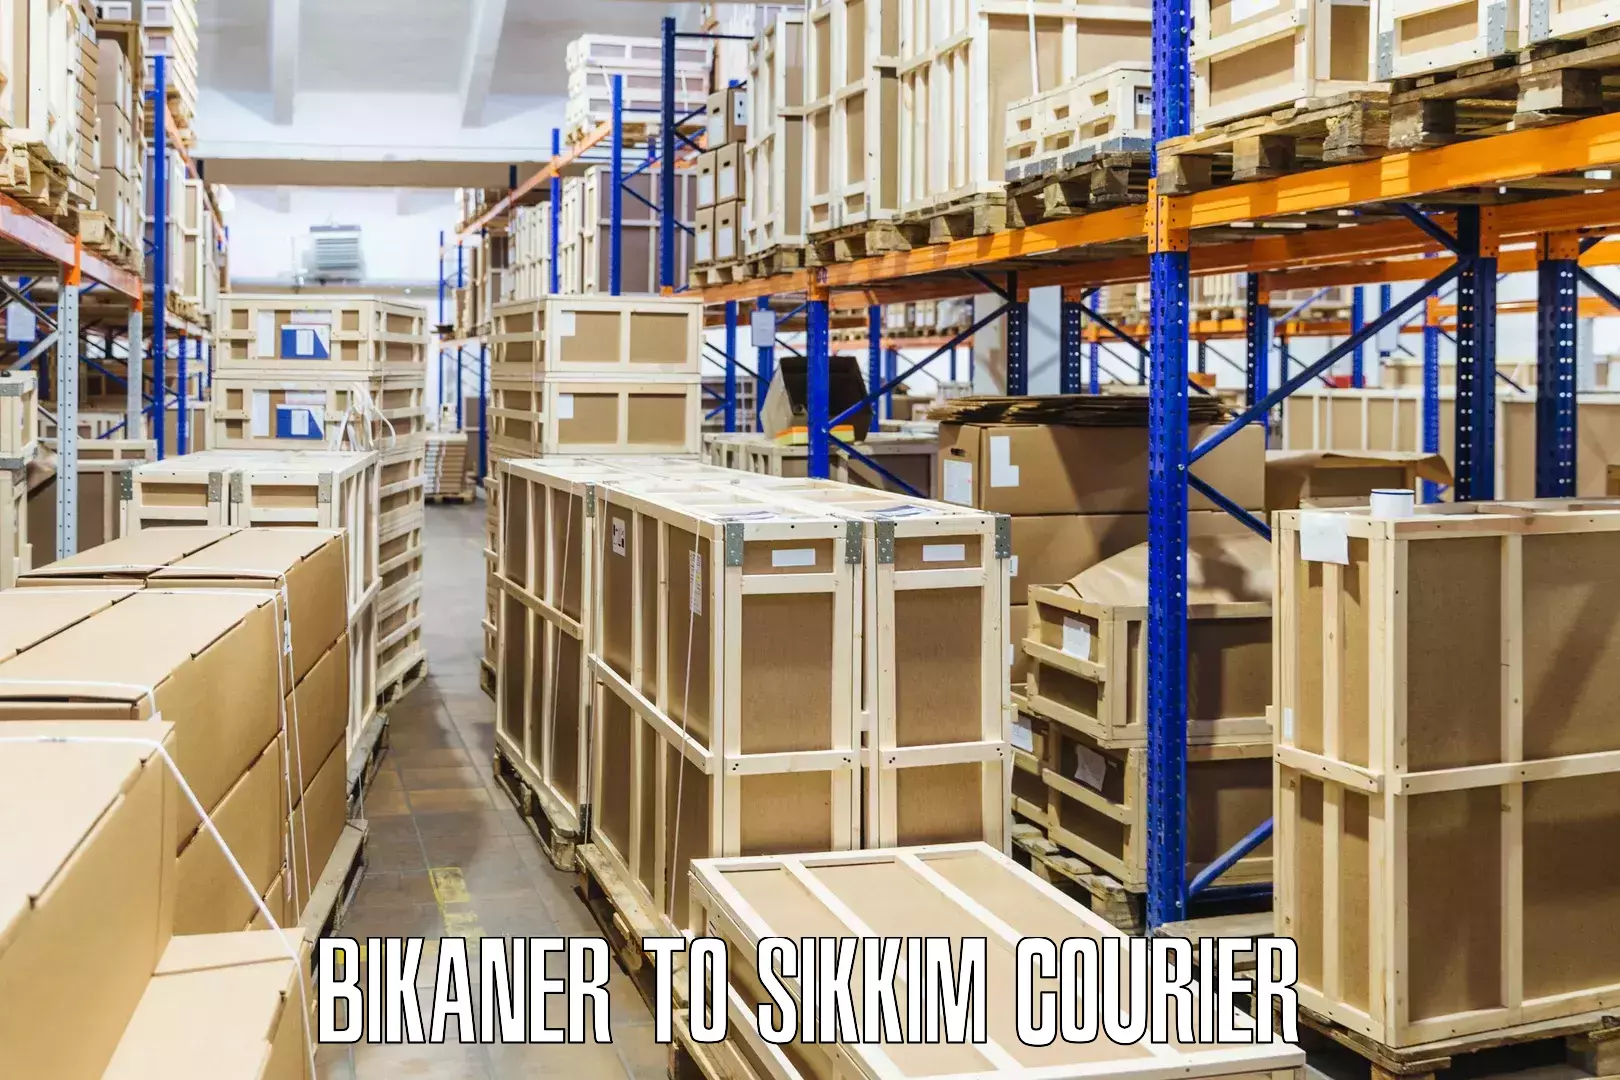 Courier service comparison in Bikaner to Geyzing